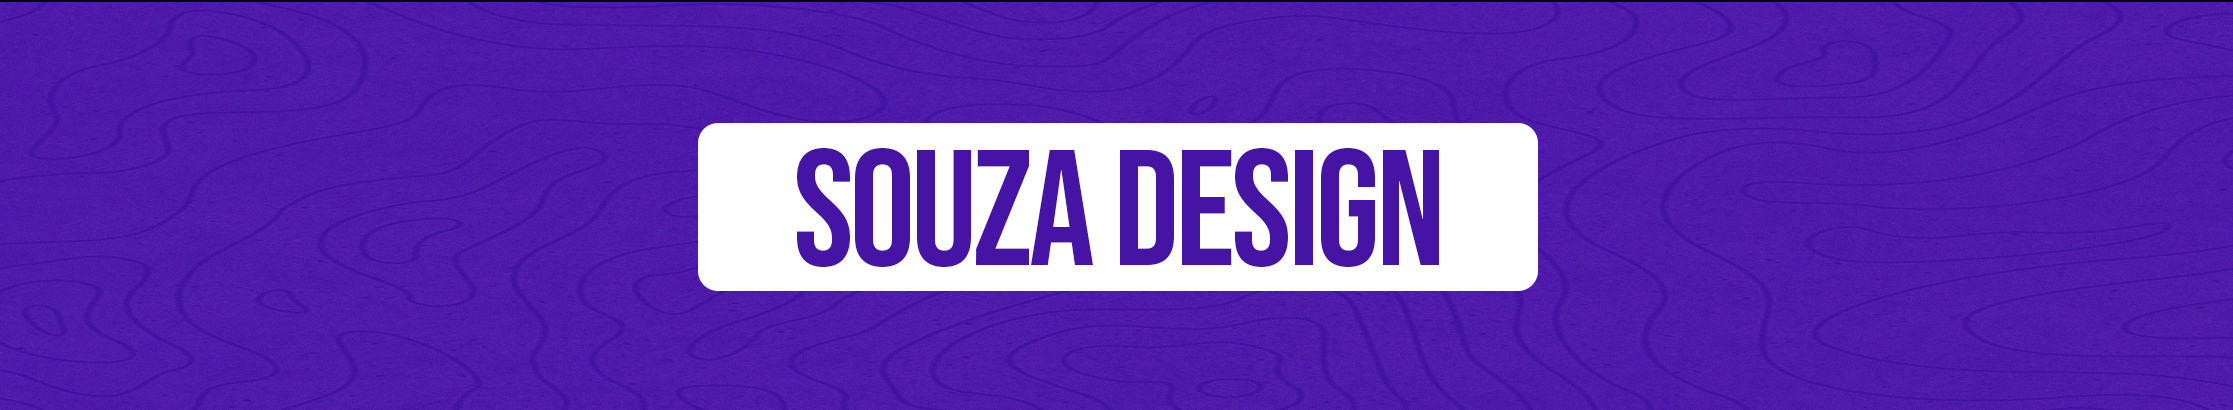 Souza Design's profile banner